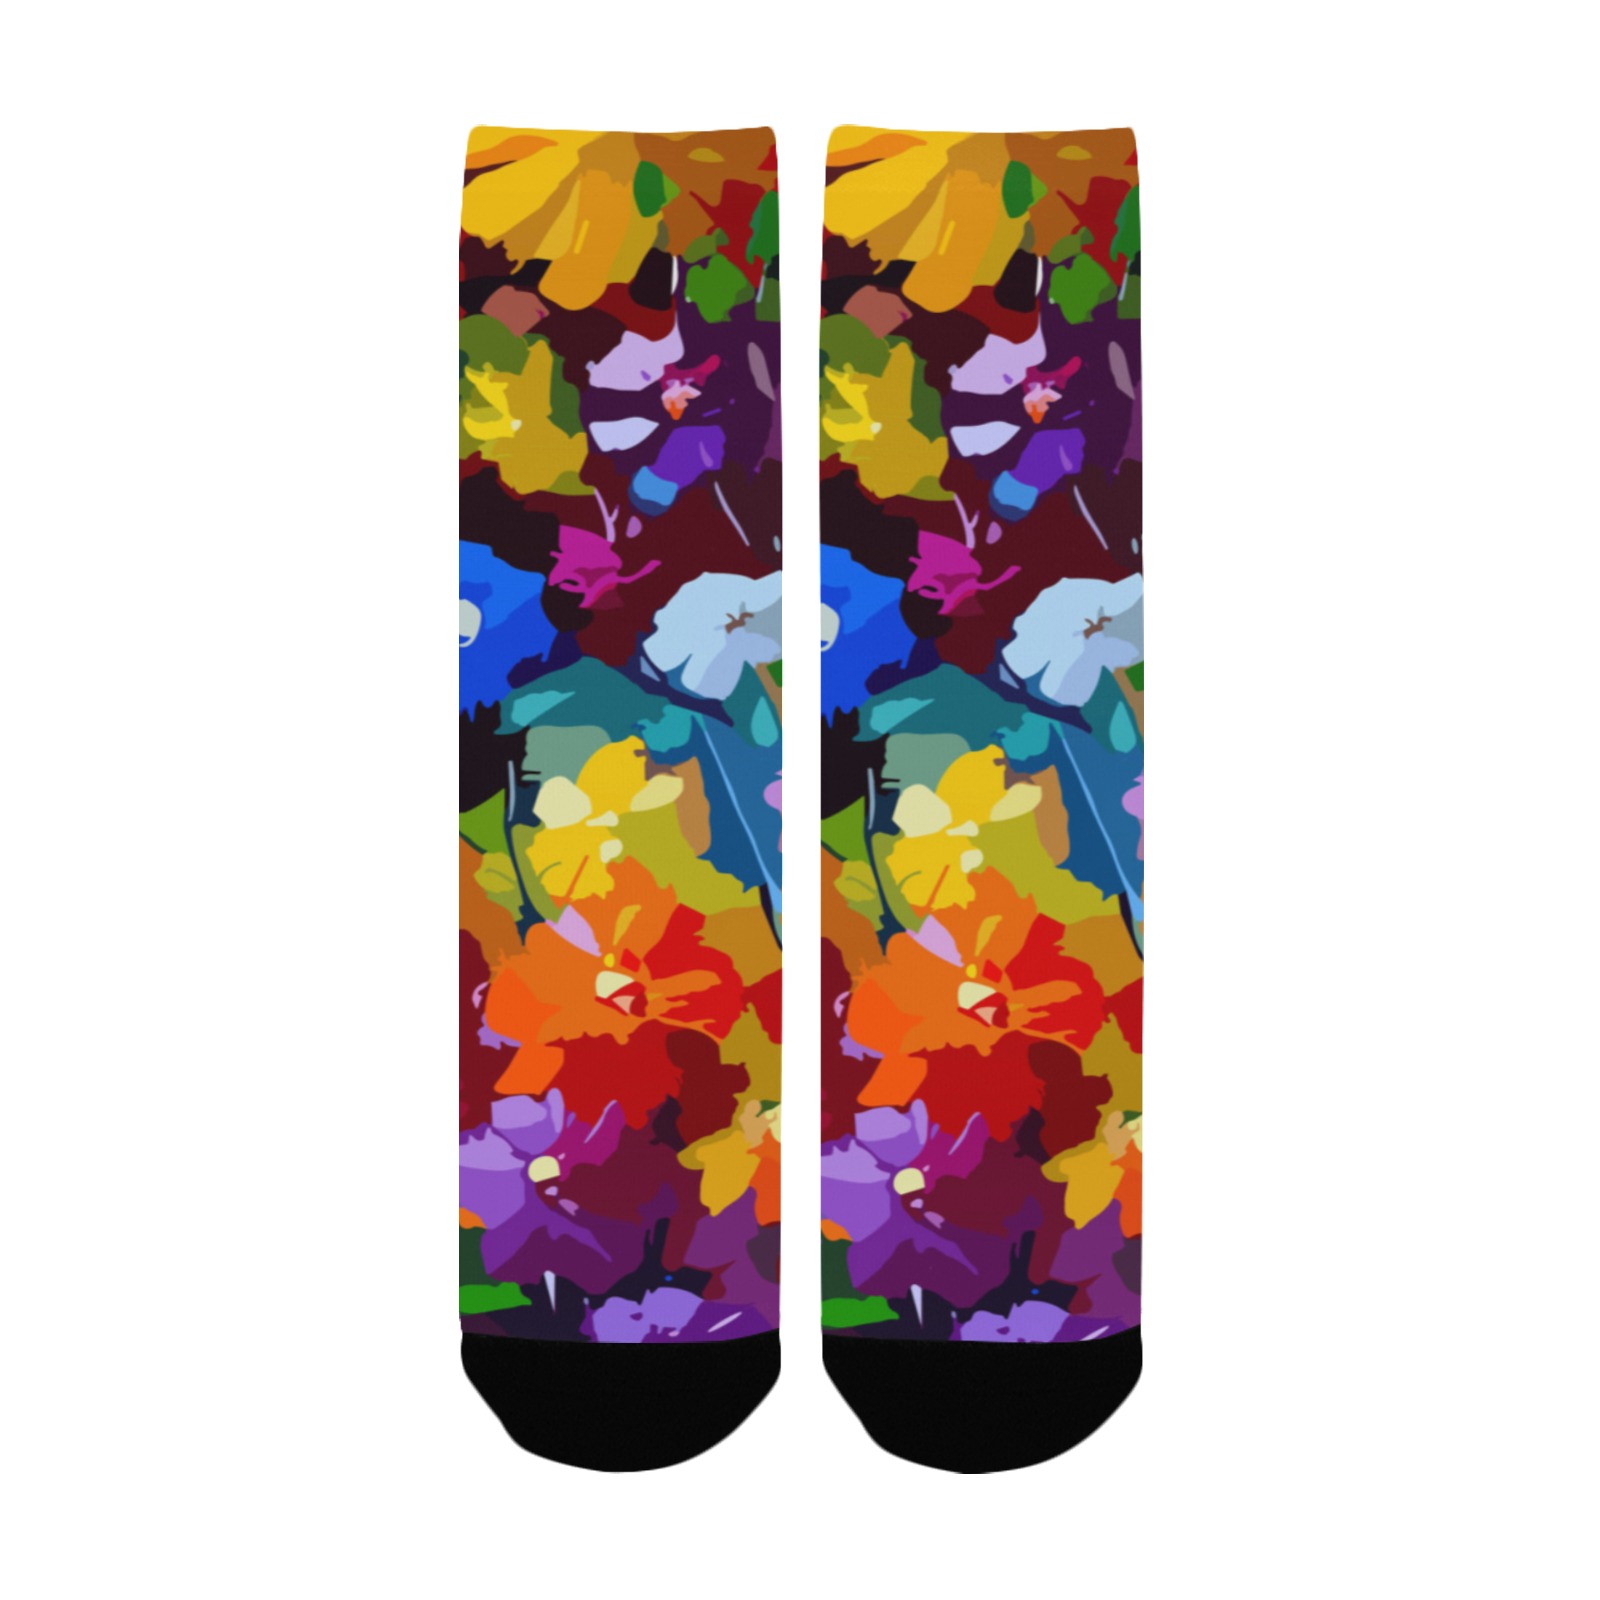 flowers-art-75v-08 Custom Socks for Women